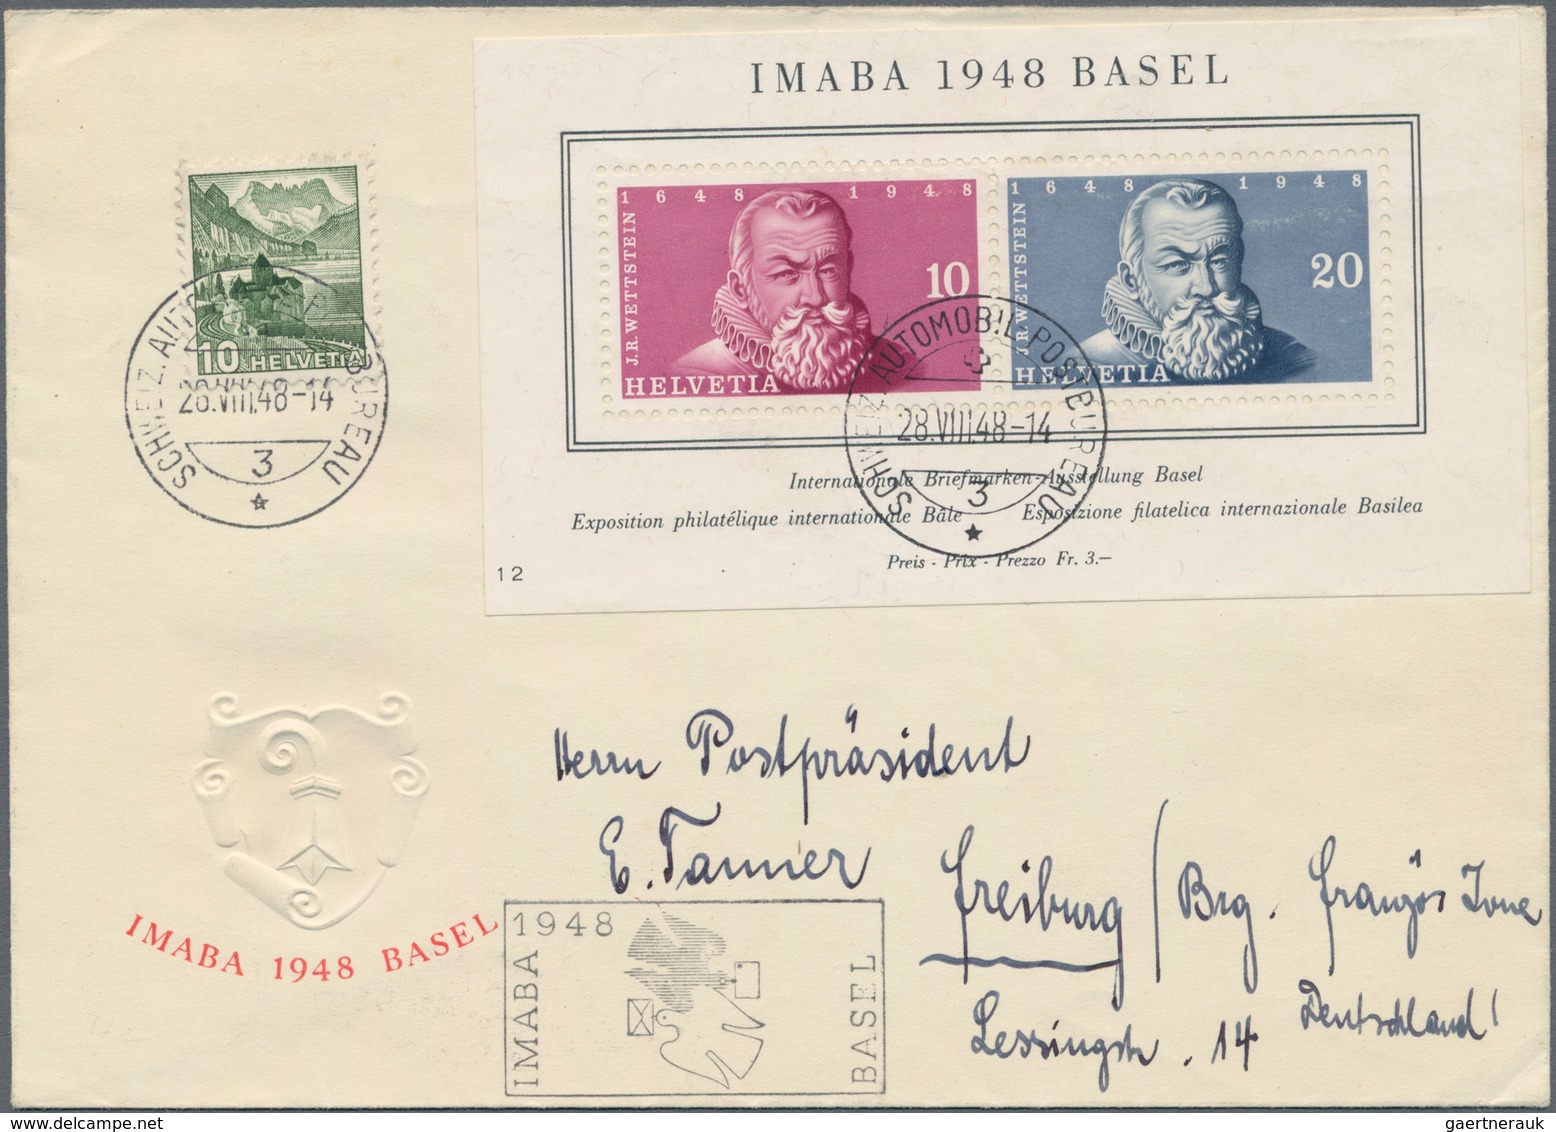 Schweiz: 1858/1978, Meist Bis 1960, Partie Von 28 Briefen Und Karten, Dabei Block 1 Auf R-FDC Mit An - Sammlungen